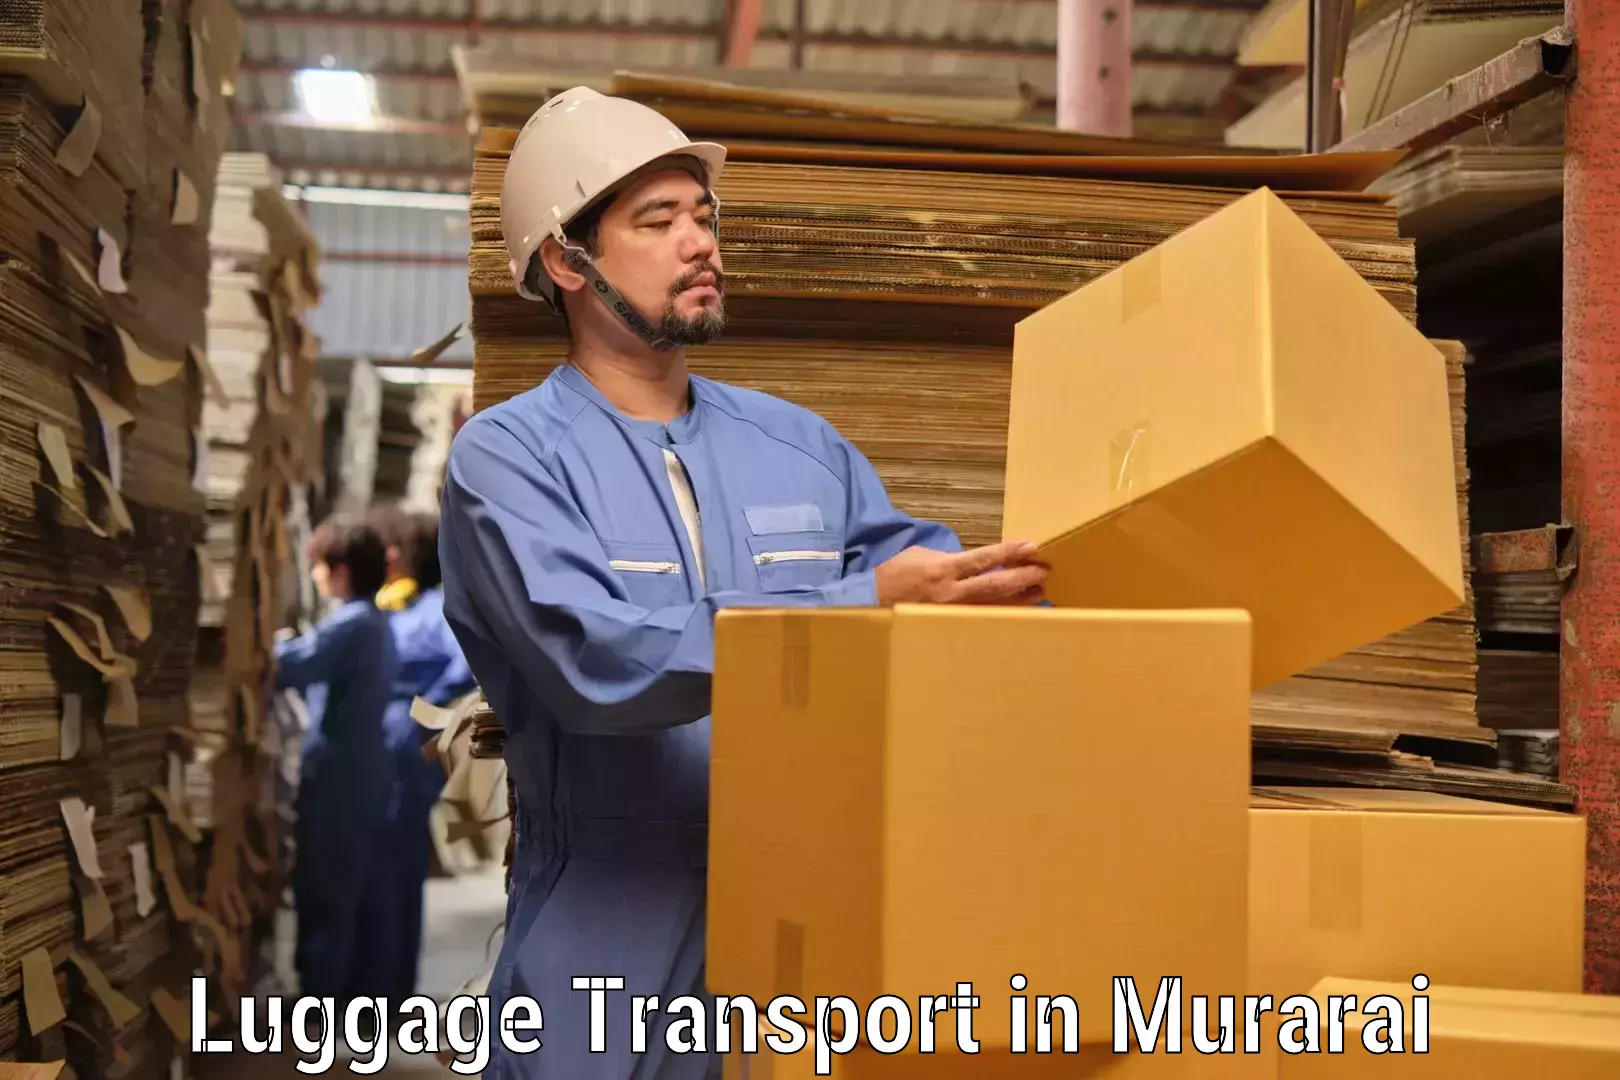 Baggage transport estimate in Murarai